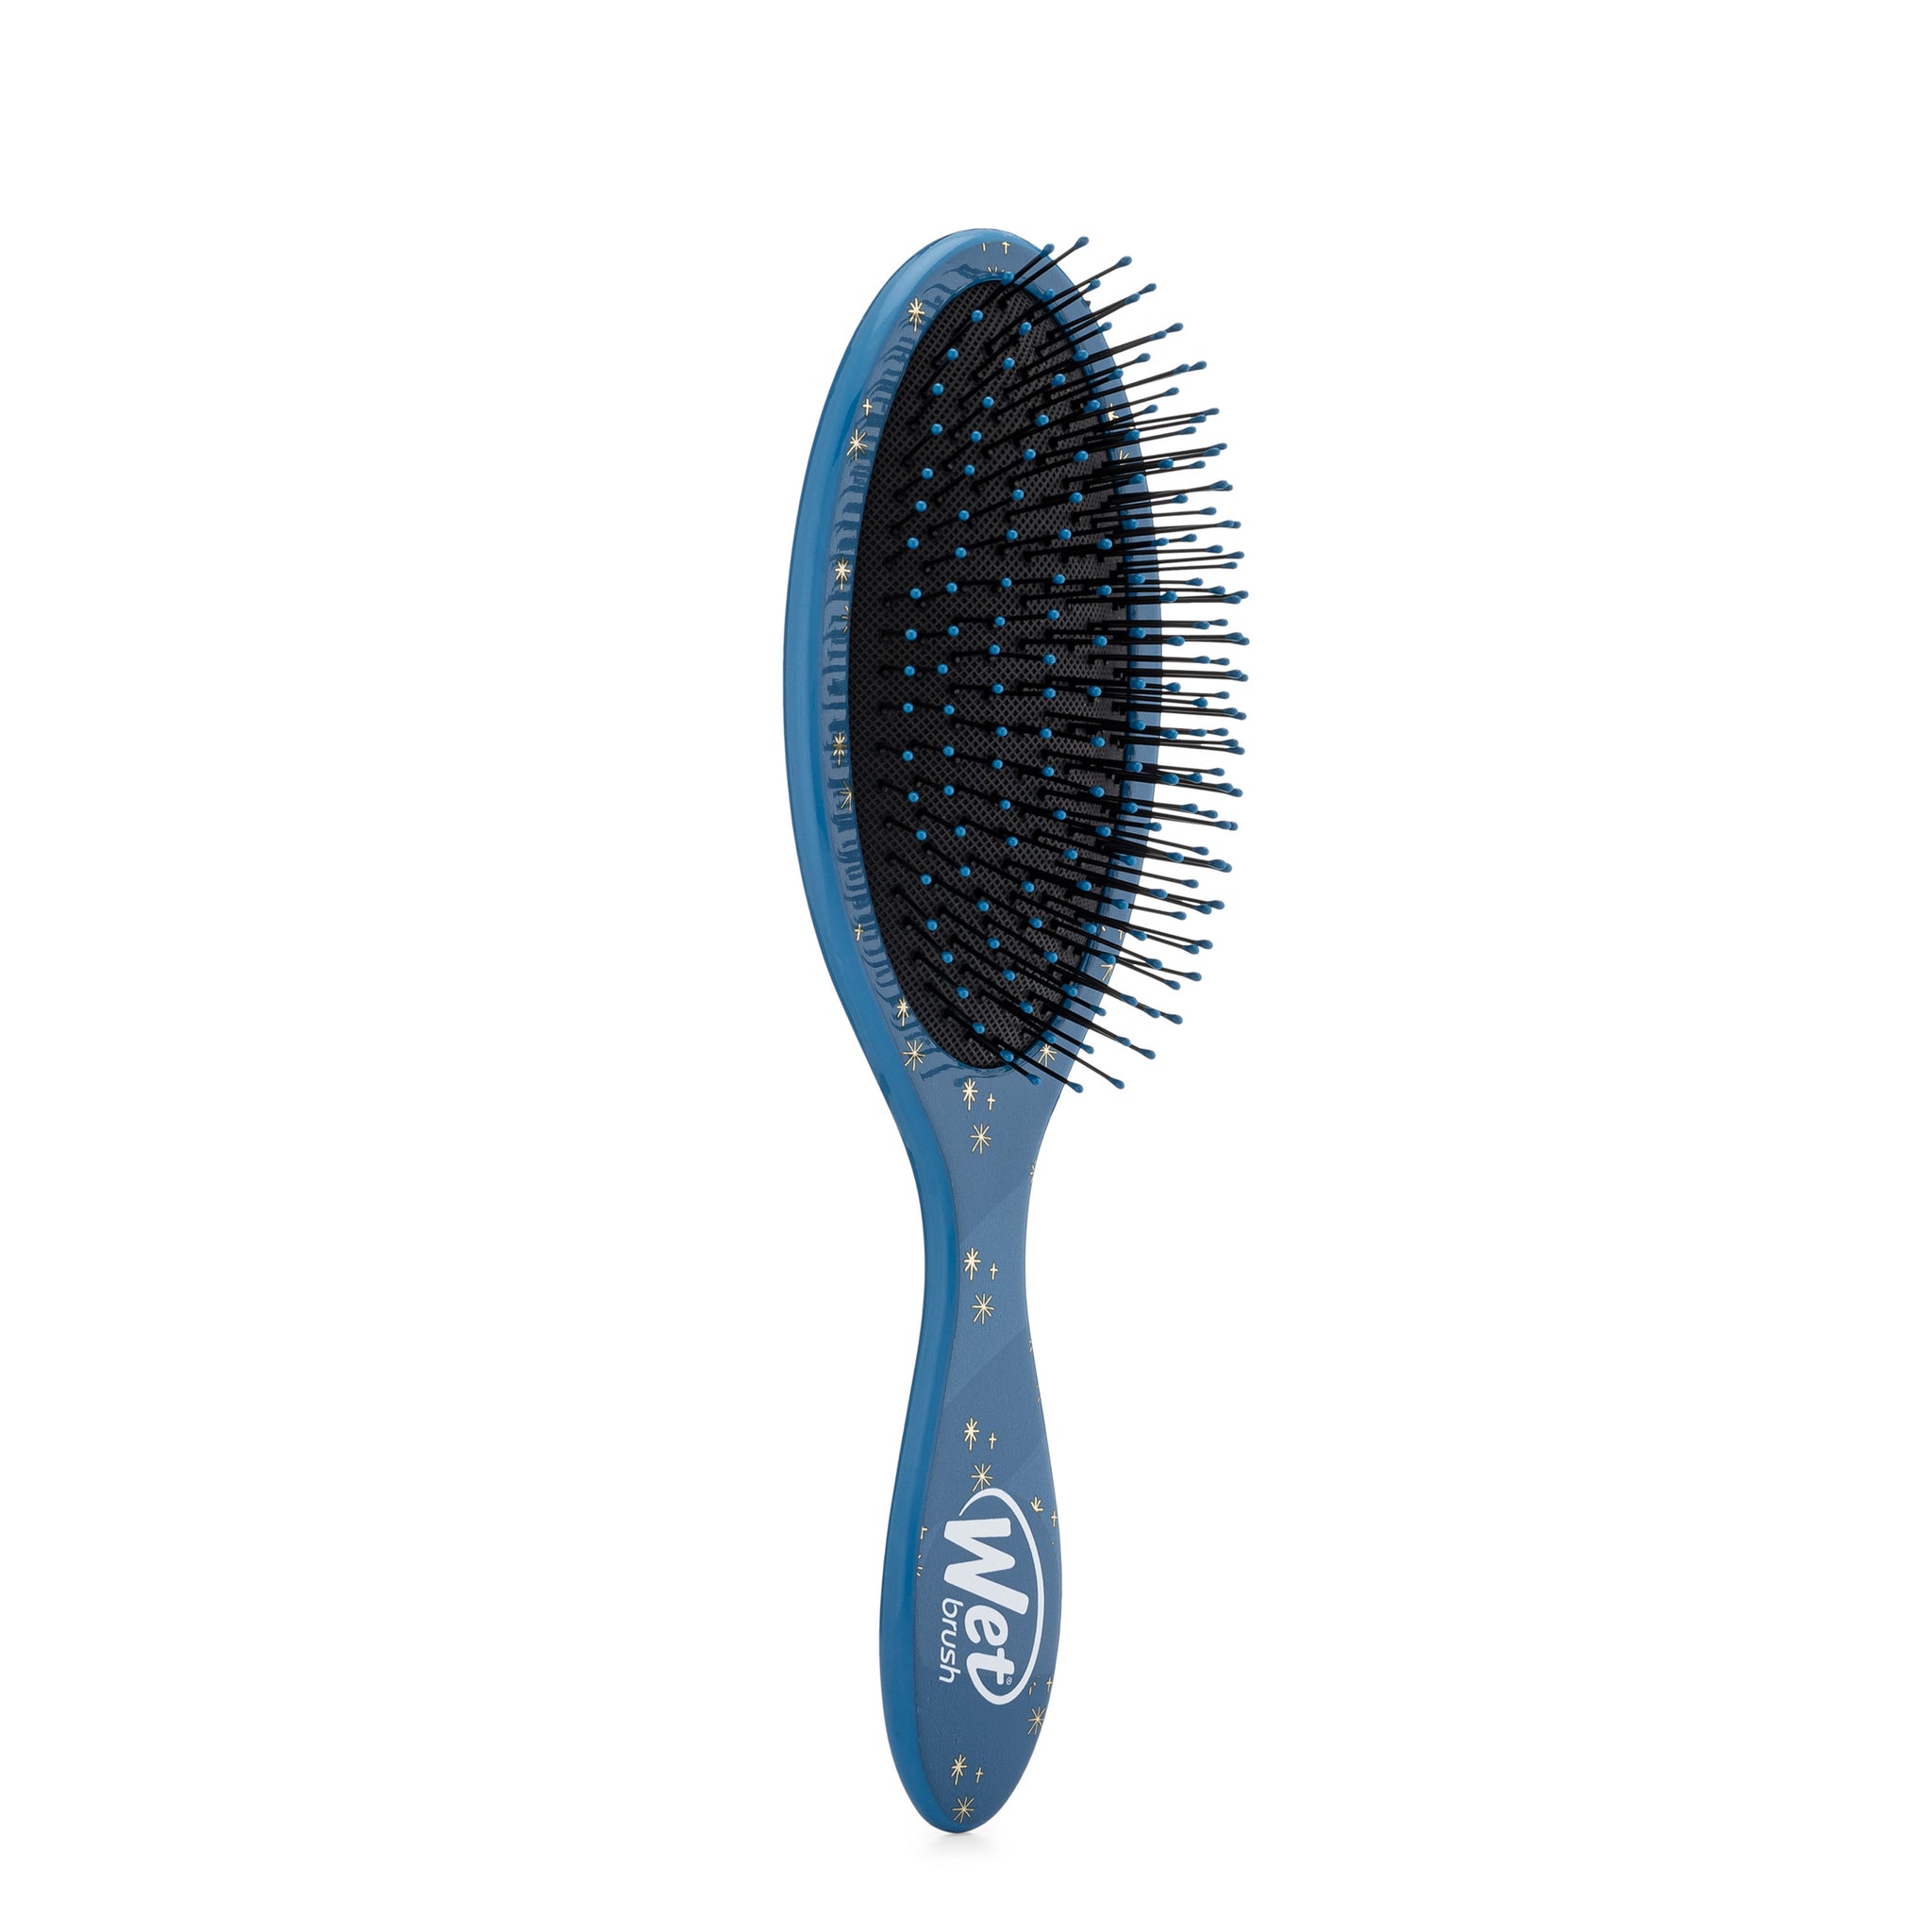 Wet Brush® Original Detangler - Basic Sky Blue